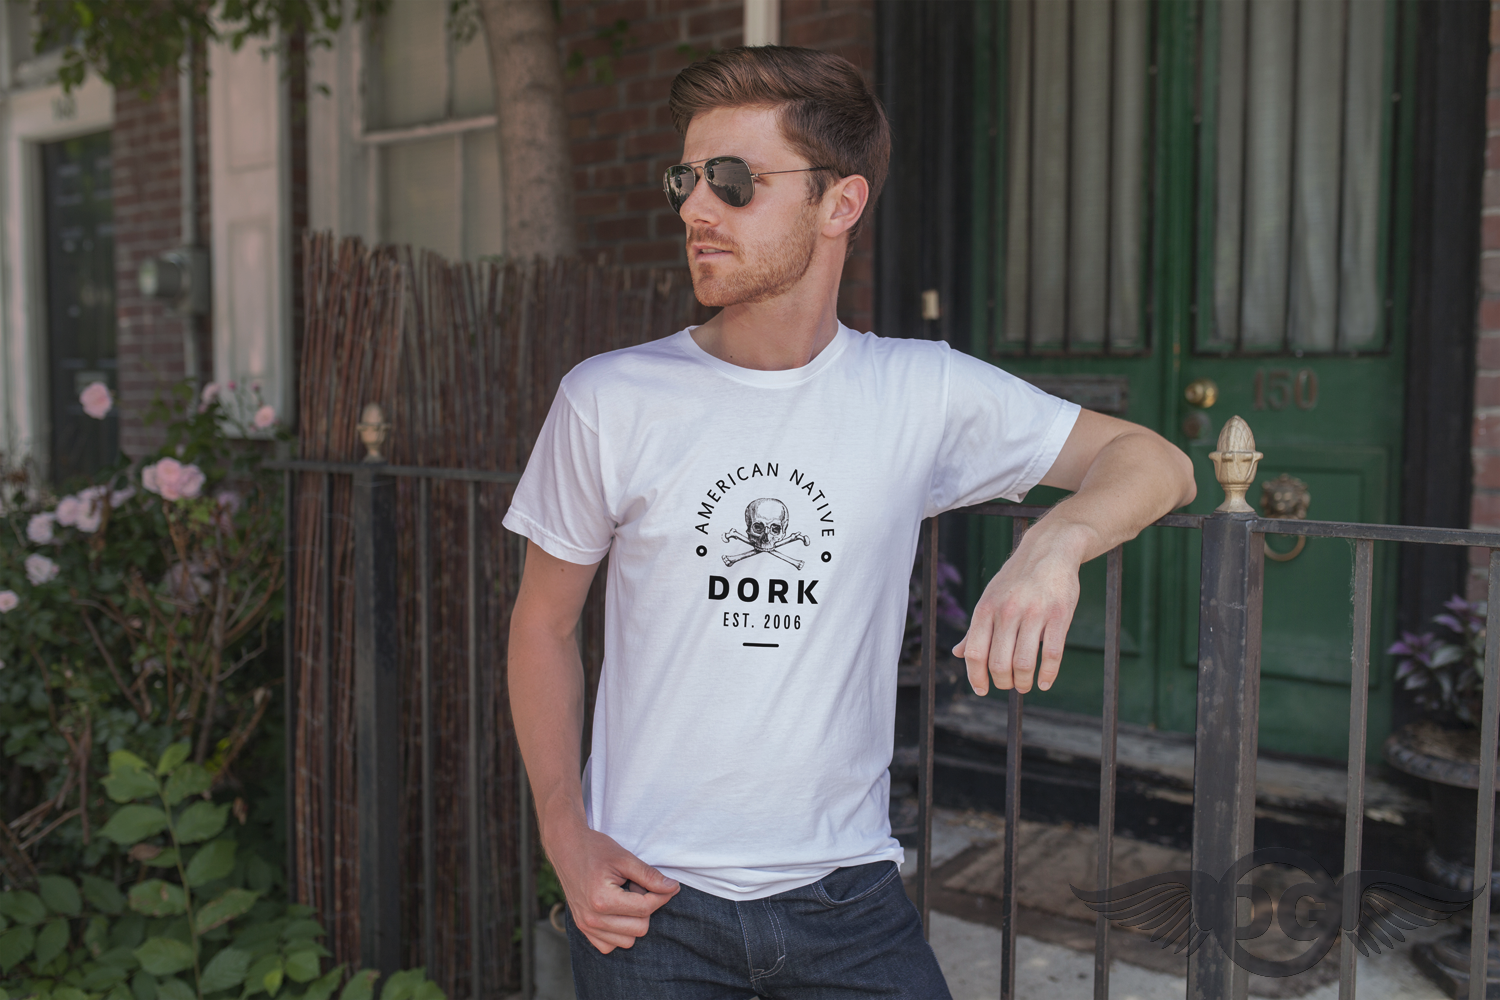 The Dork Group: The Dork Group Goes Dot-Com